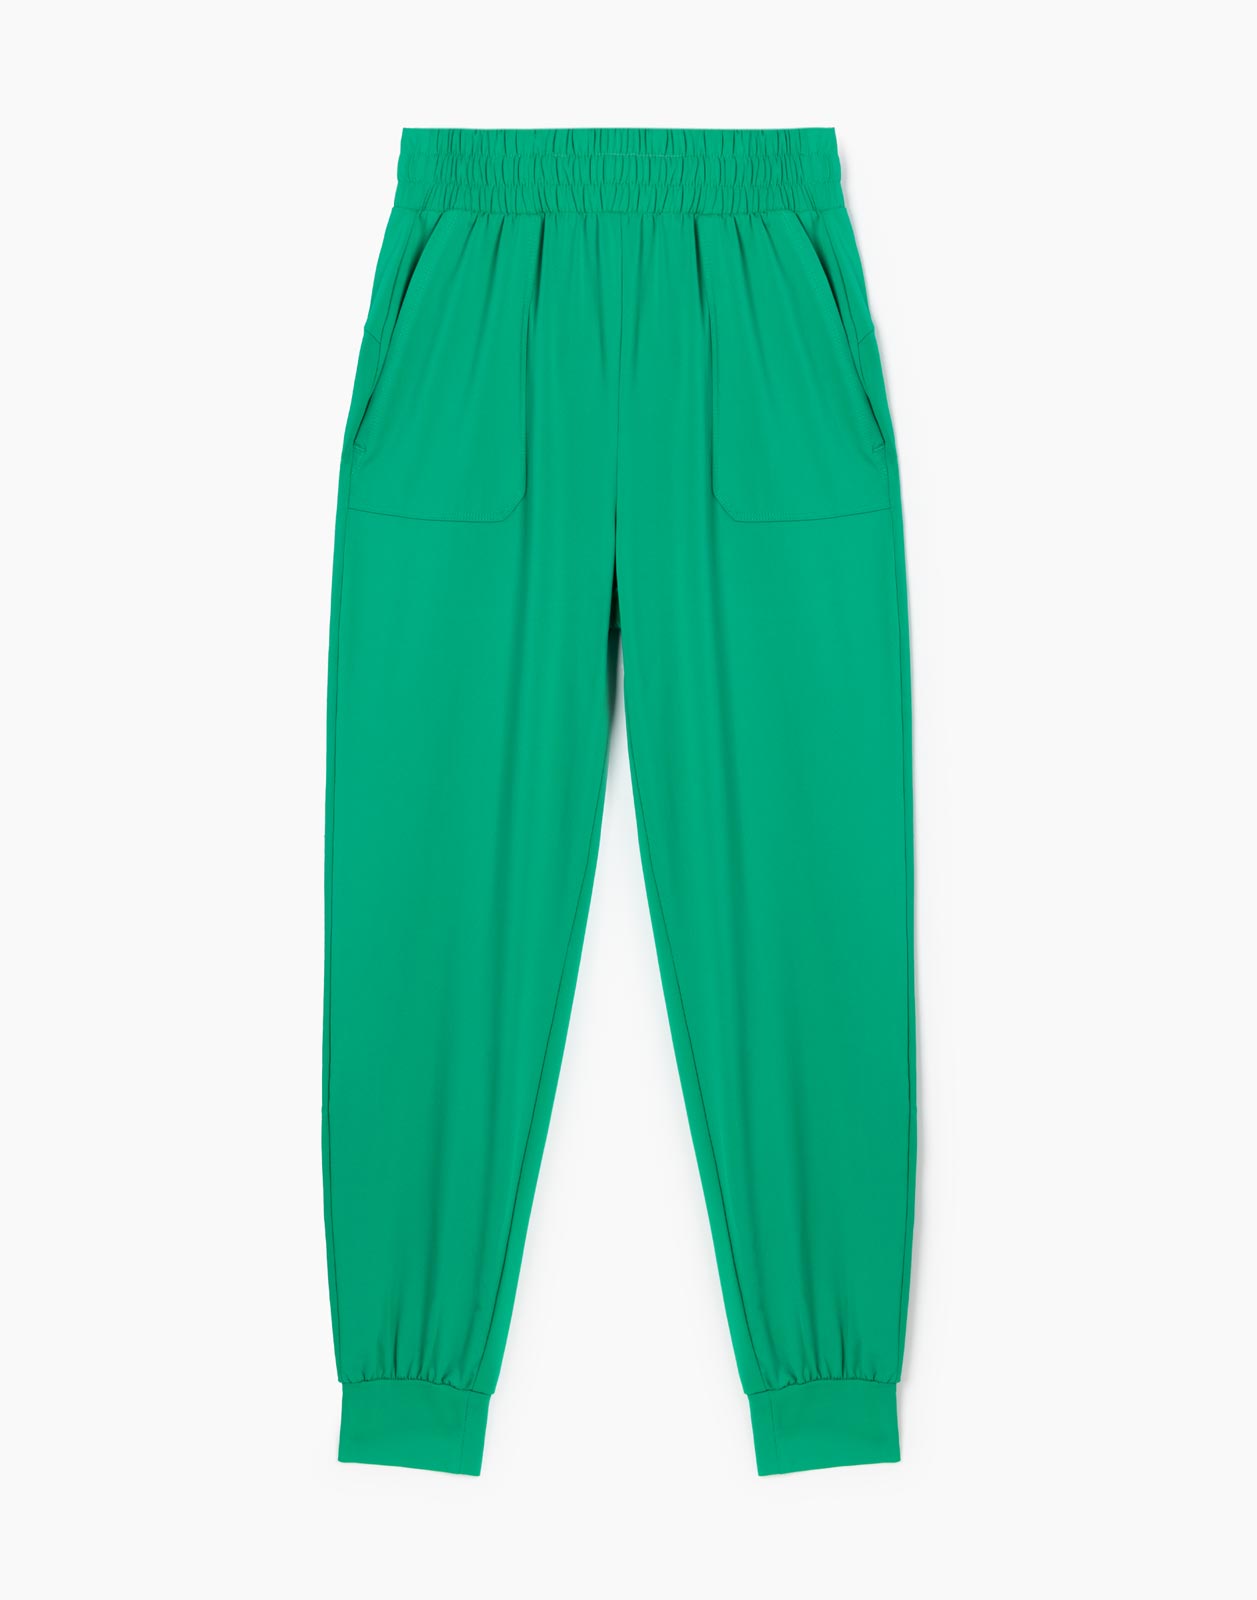 Зелёные спортивные брюки Jogger из микрофибры для девочки р.164